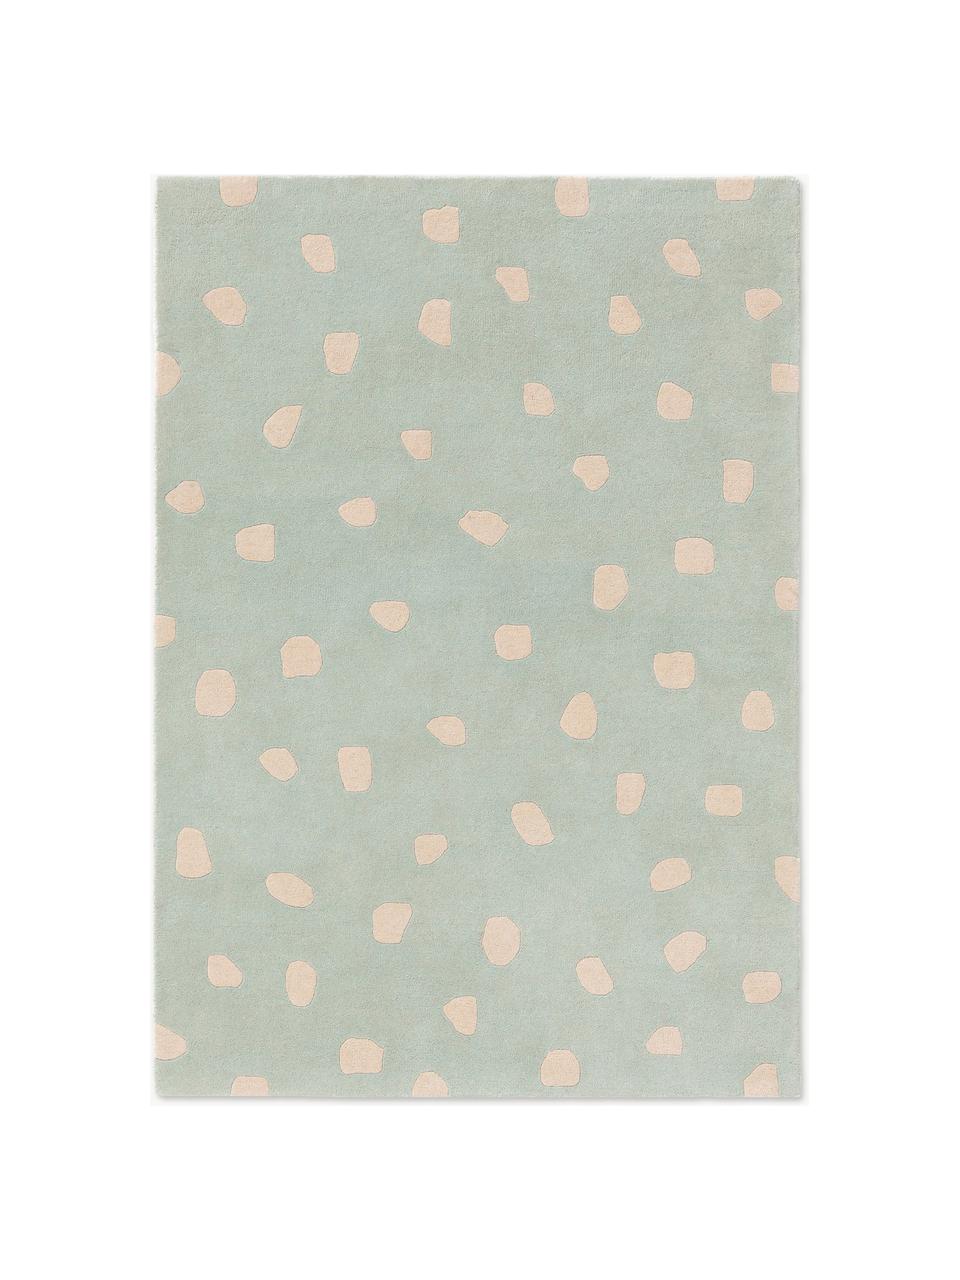 Ručne tuftovaný detský vlnený koberec Savannah, 100 % vlna

V prvých týždňoch používania môžu vlnené koberce uvoľňovať vlákna, tento jav zmizne po niekoľkých týždňoch používania, Šalviová, svetlobéžová, Ø 120 x V 170 cm (veľkosť XL)